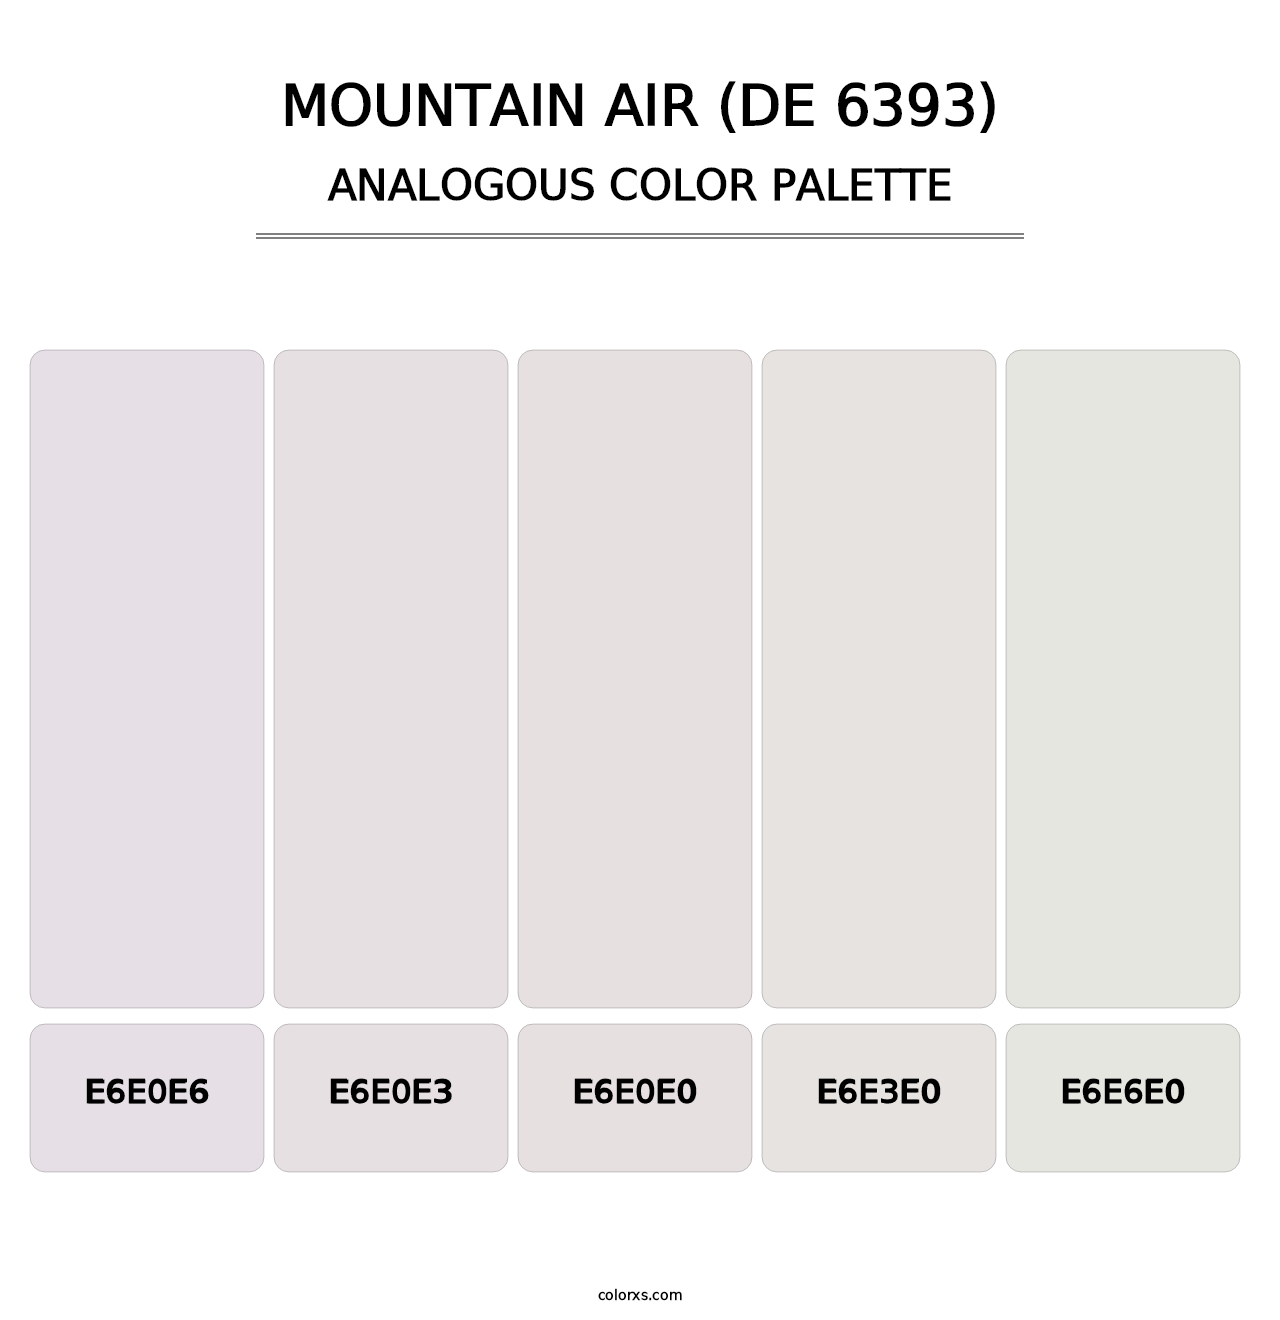 Mountain Air (DE 6393) - Analogous Color Palette